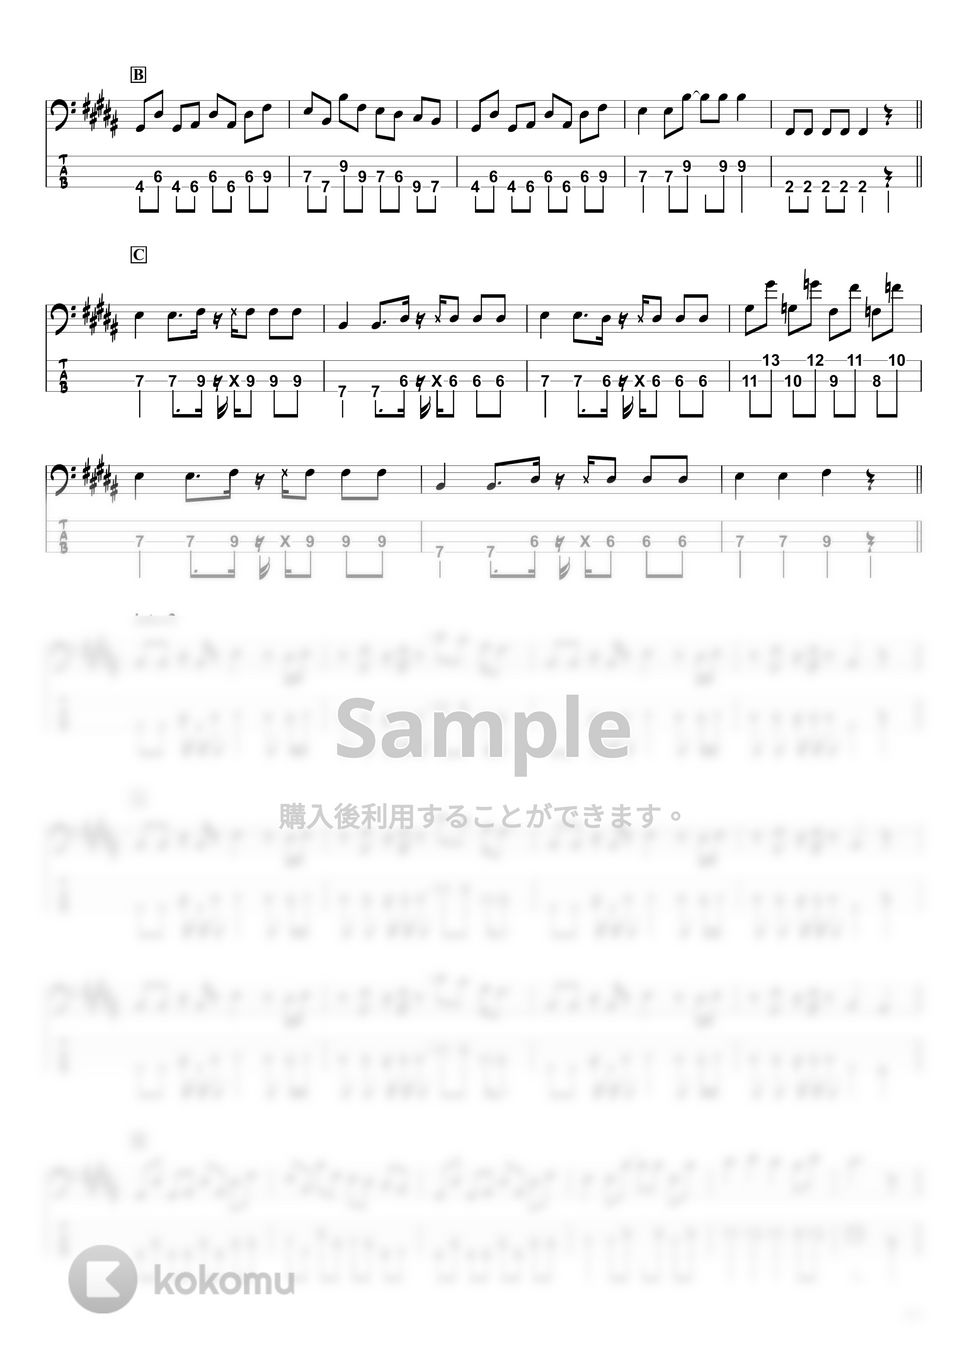 ヤングスキニー - 本当はね、 (ベースTAB譜☆4弦ベース対応) by swbass